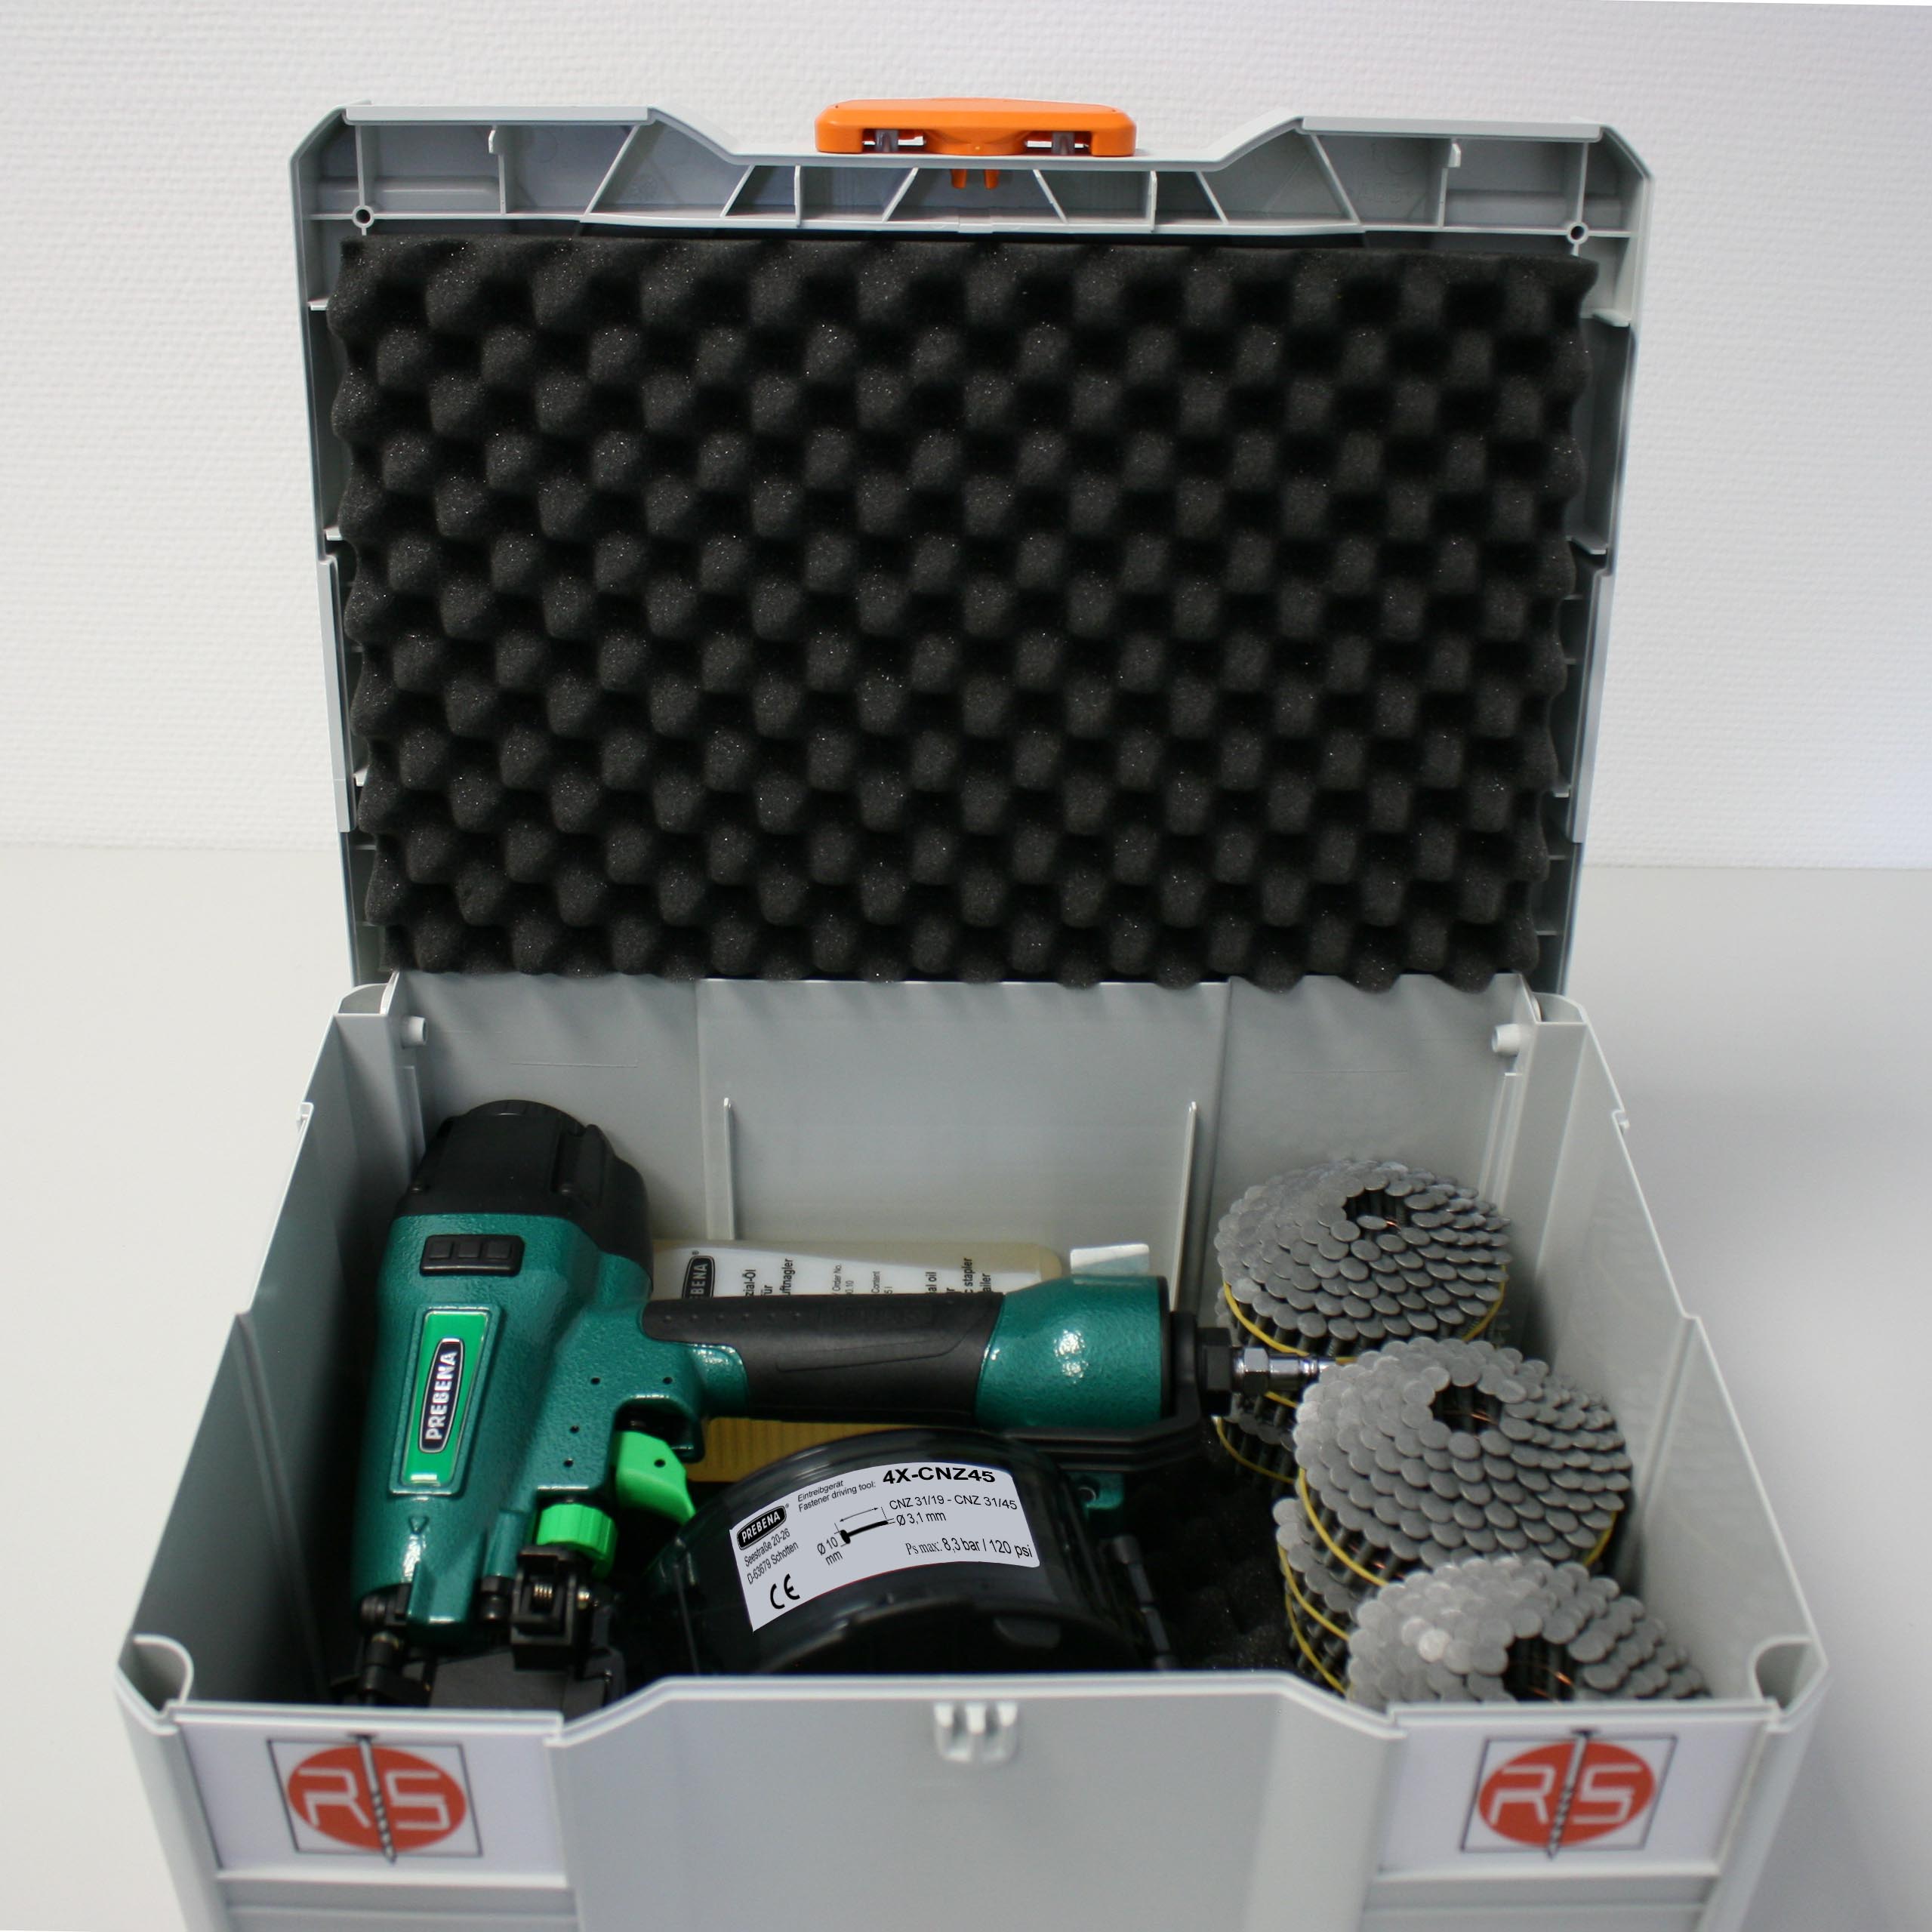 Systainer Box 21- Systainer-Koffer mit PREBENA Druckluftnagler 4X-CNZ45 inkl Nägel und 1 Fl. Öl